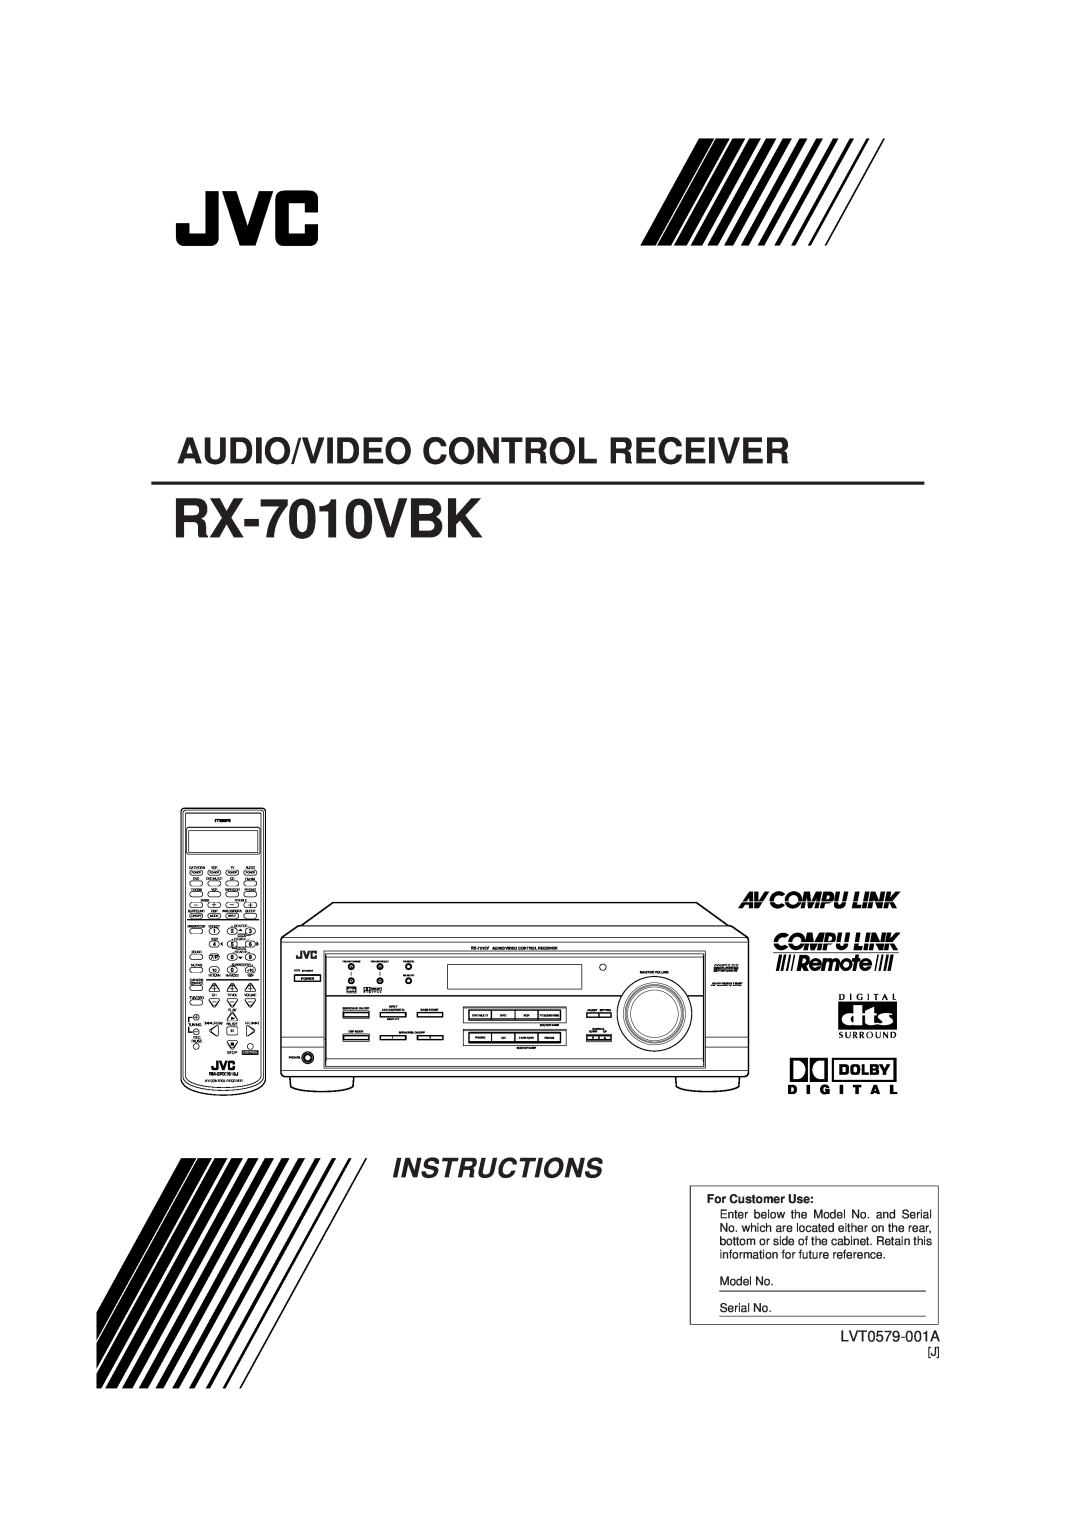 JVC RX-7010VBK manual Audio/Video Control Receiver, Instructions, LVT0579-001A, D I G I T A L, For Customer Use, Menu 